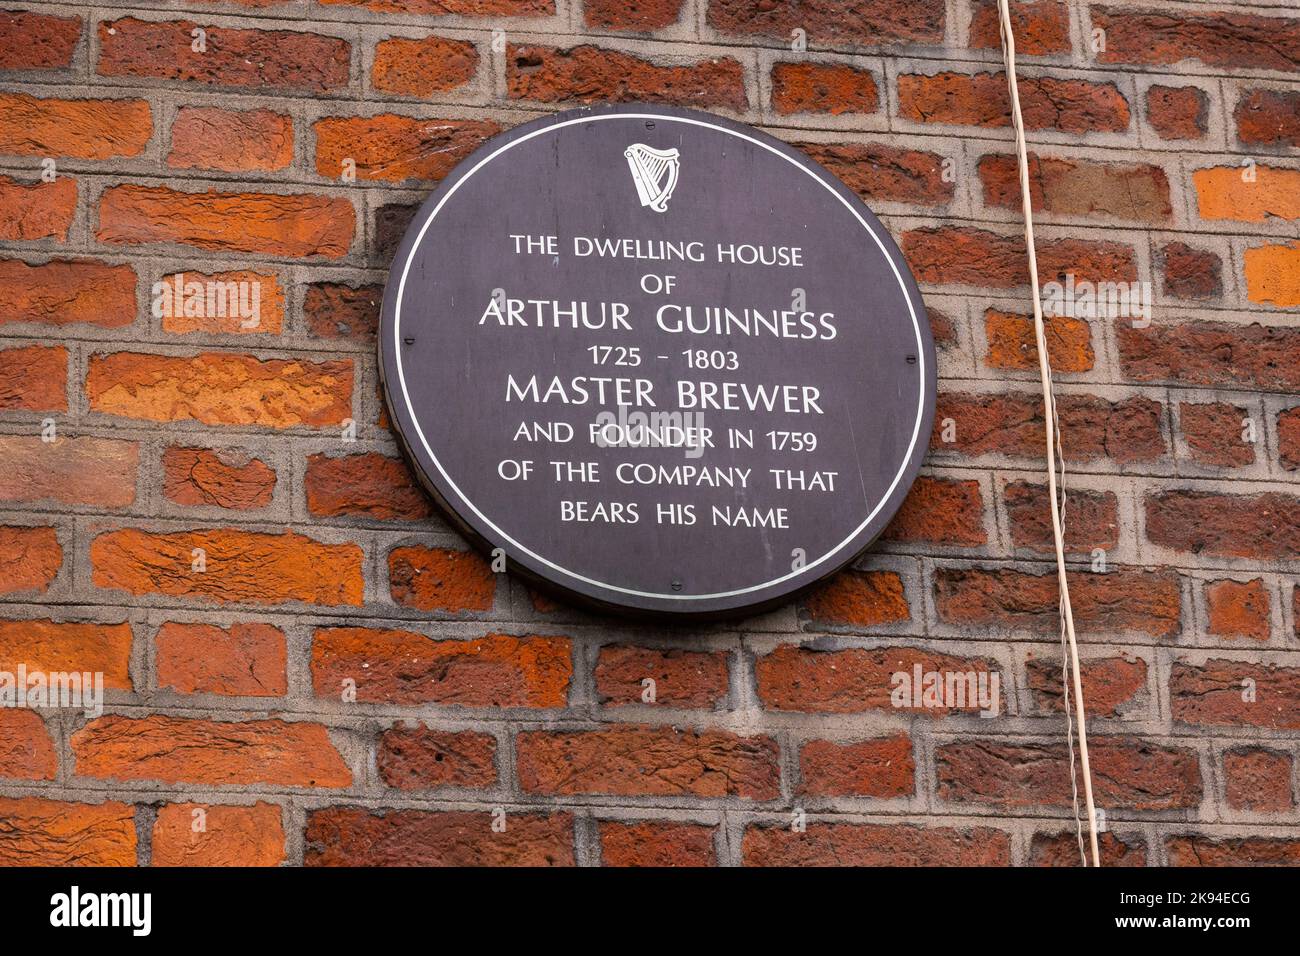 Irlande Eire Dublin St Jamen's Gate bière stout porter noir ALE a commencé 1759 plaque maison maison Arthur Guinness 1725 - 1803 fondateur mur de brique Banque D'Images